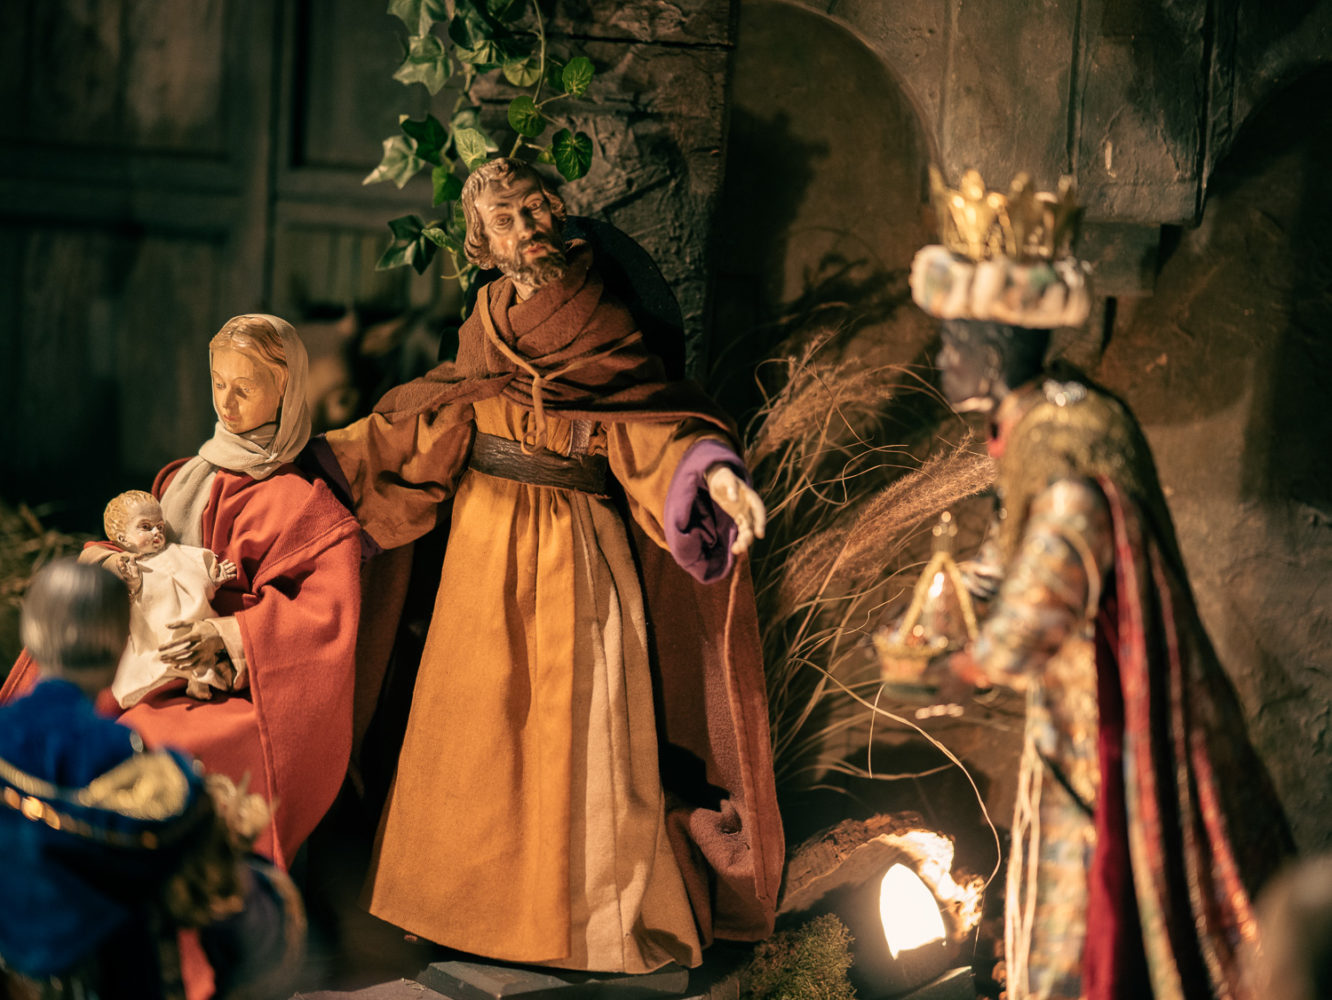 Heilige drei Könige in der Wandelkrippe von St. Nikolaus in Münster-Wolbeck. Foto: A. Hasenkamp.